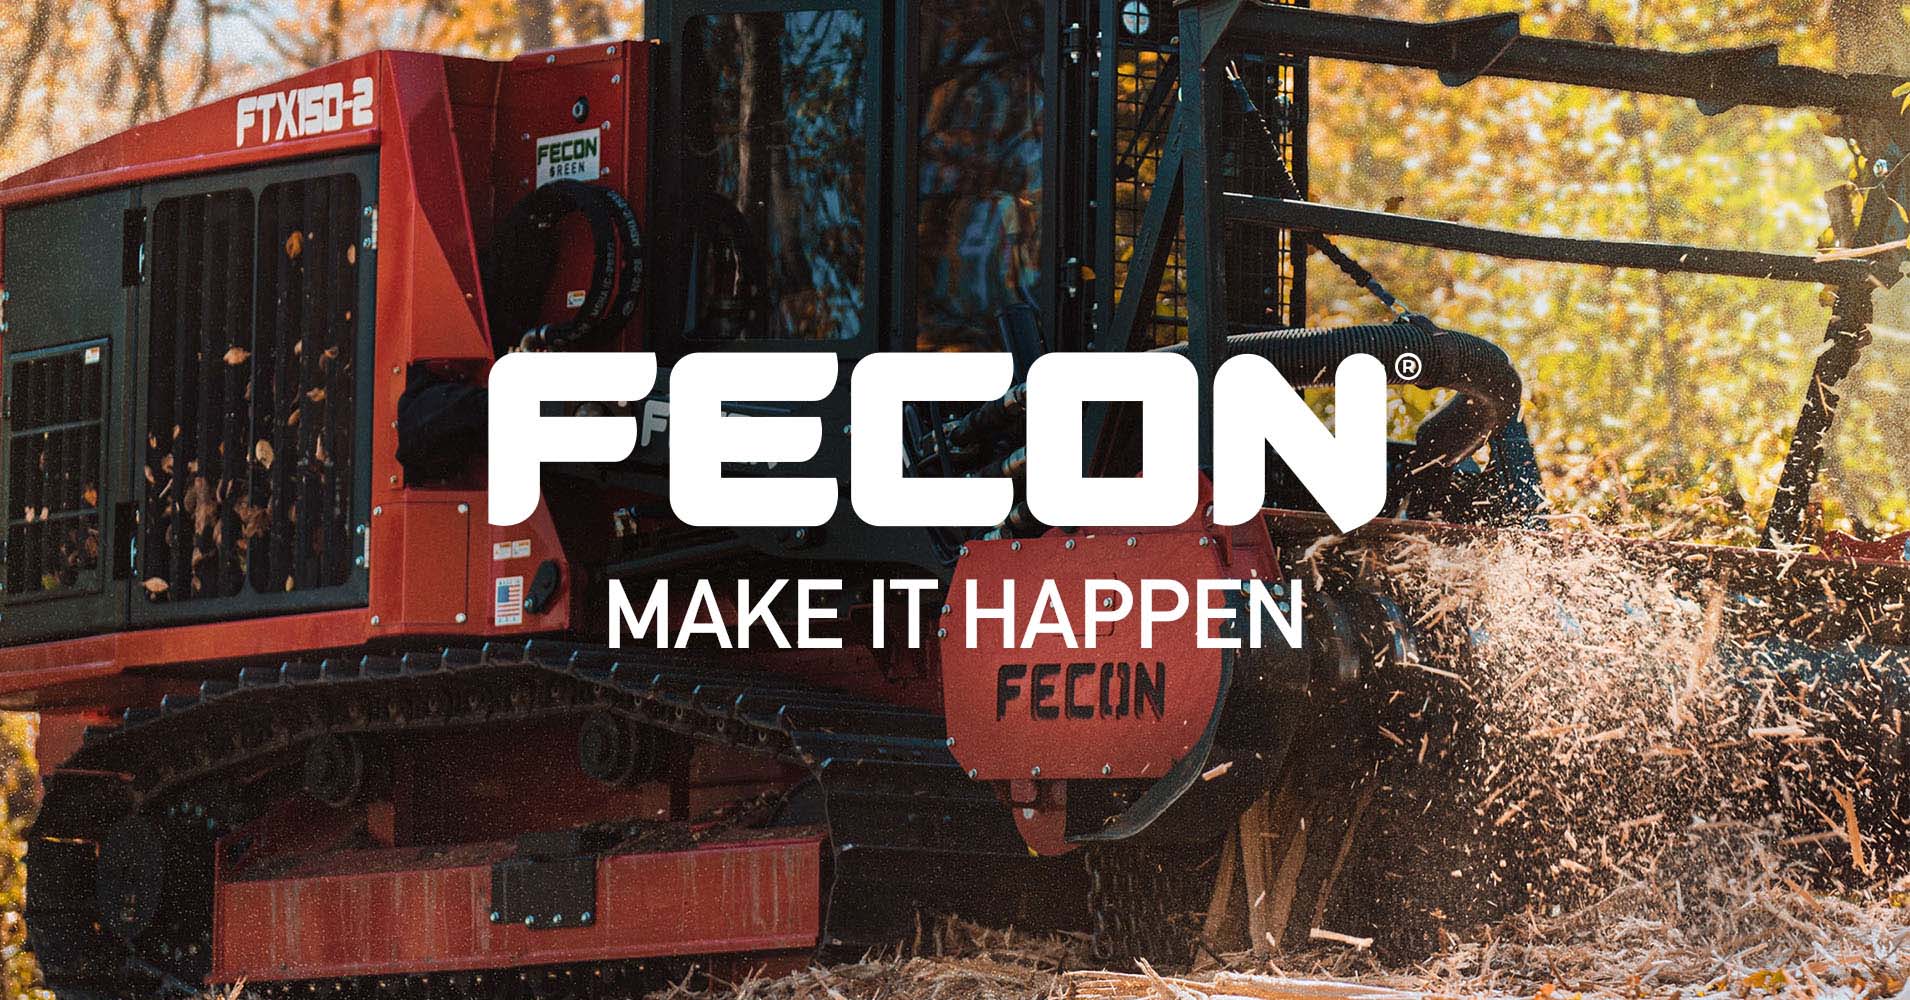 Mini Excavator Mulcher Attachments For Sale — Fecon - Fecon - Medium